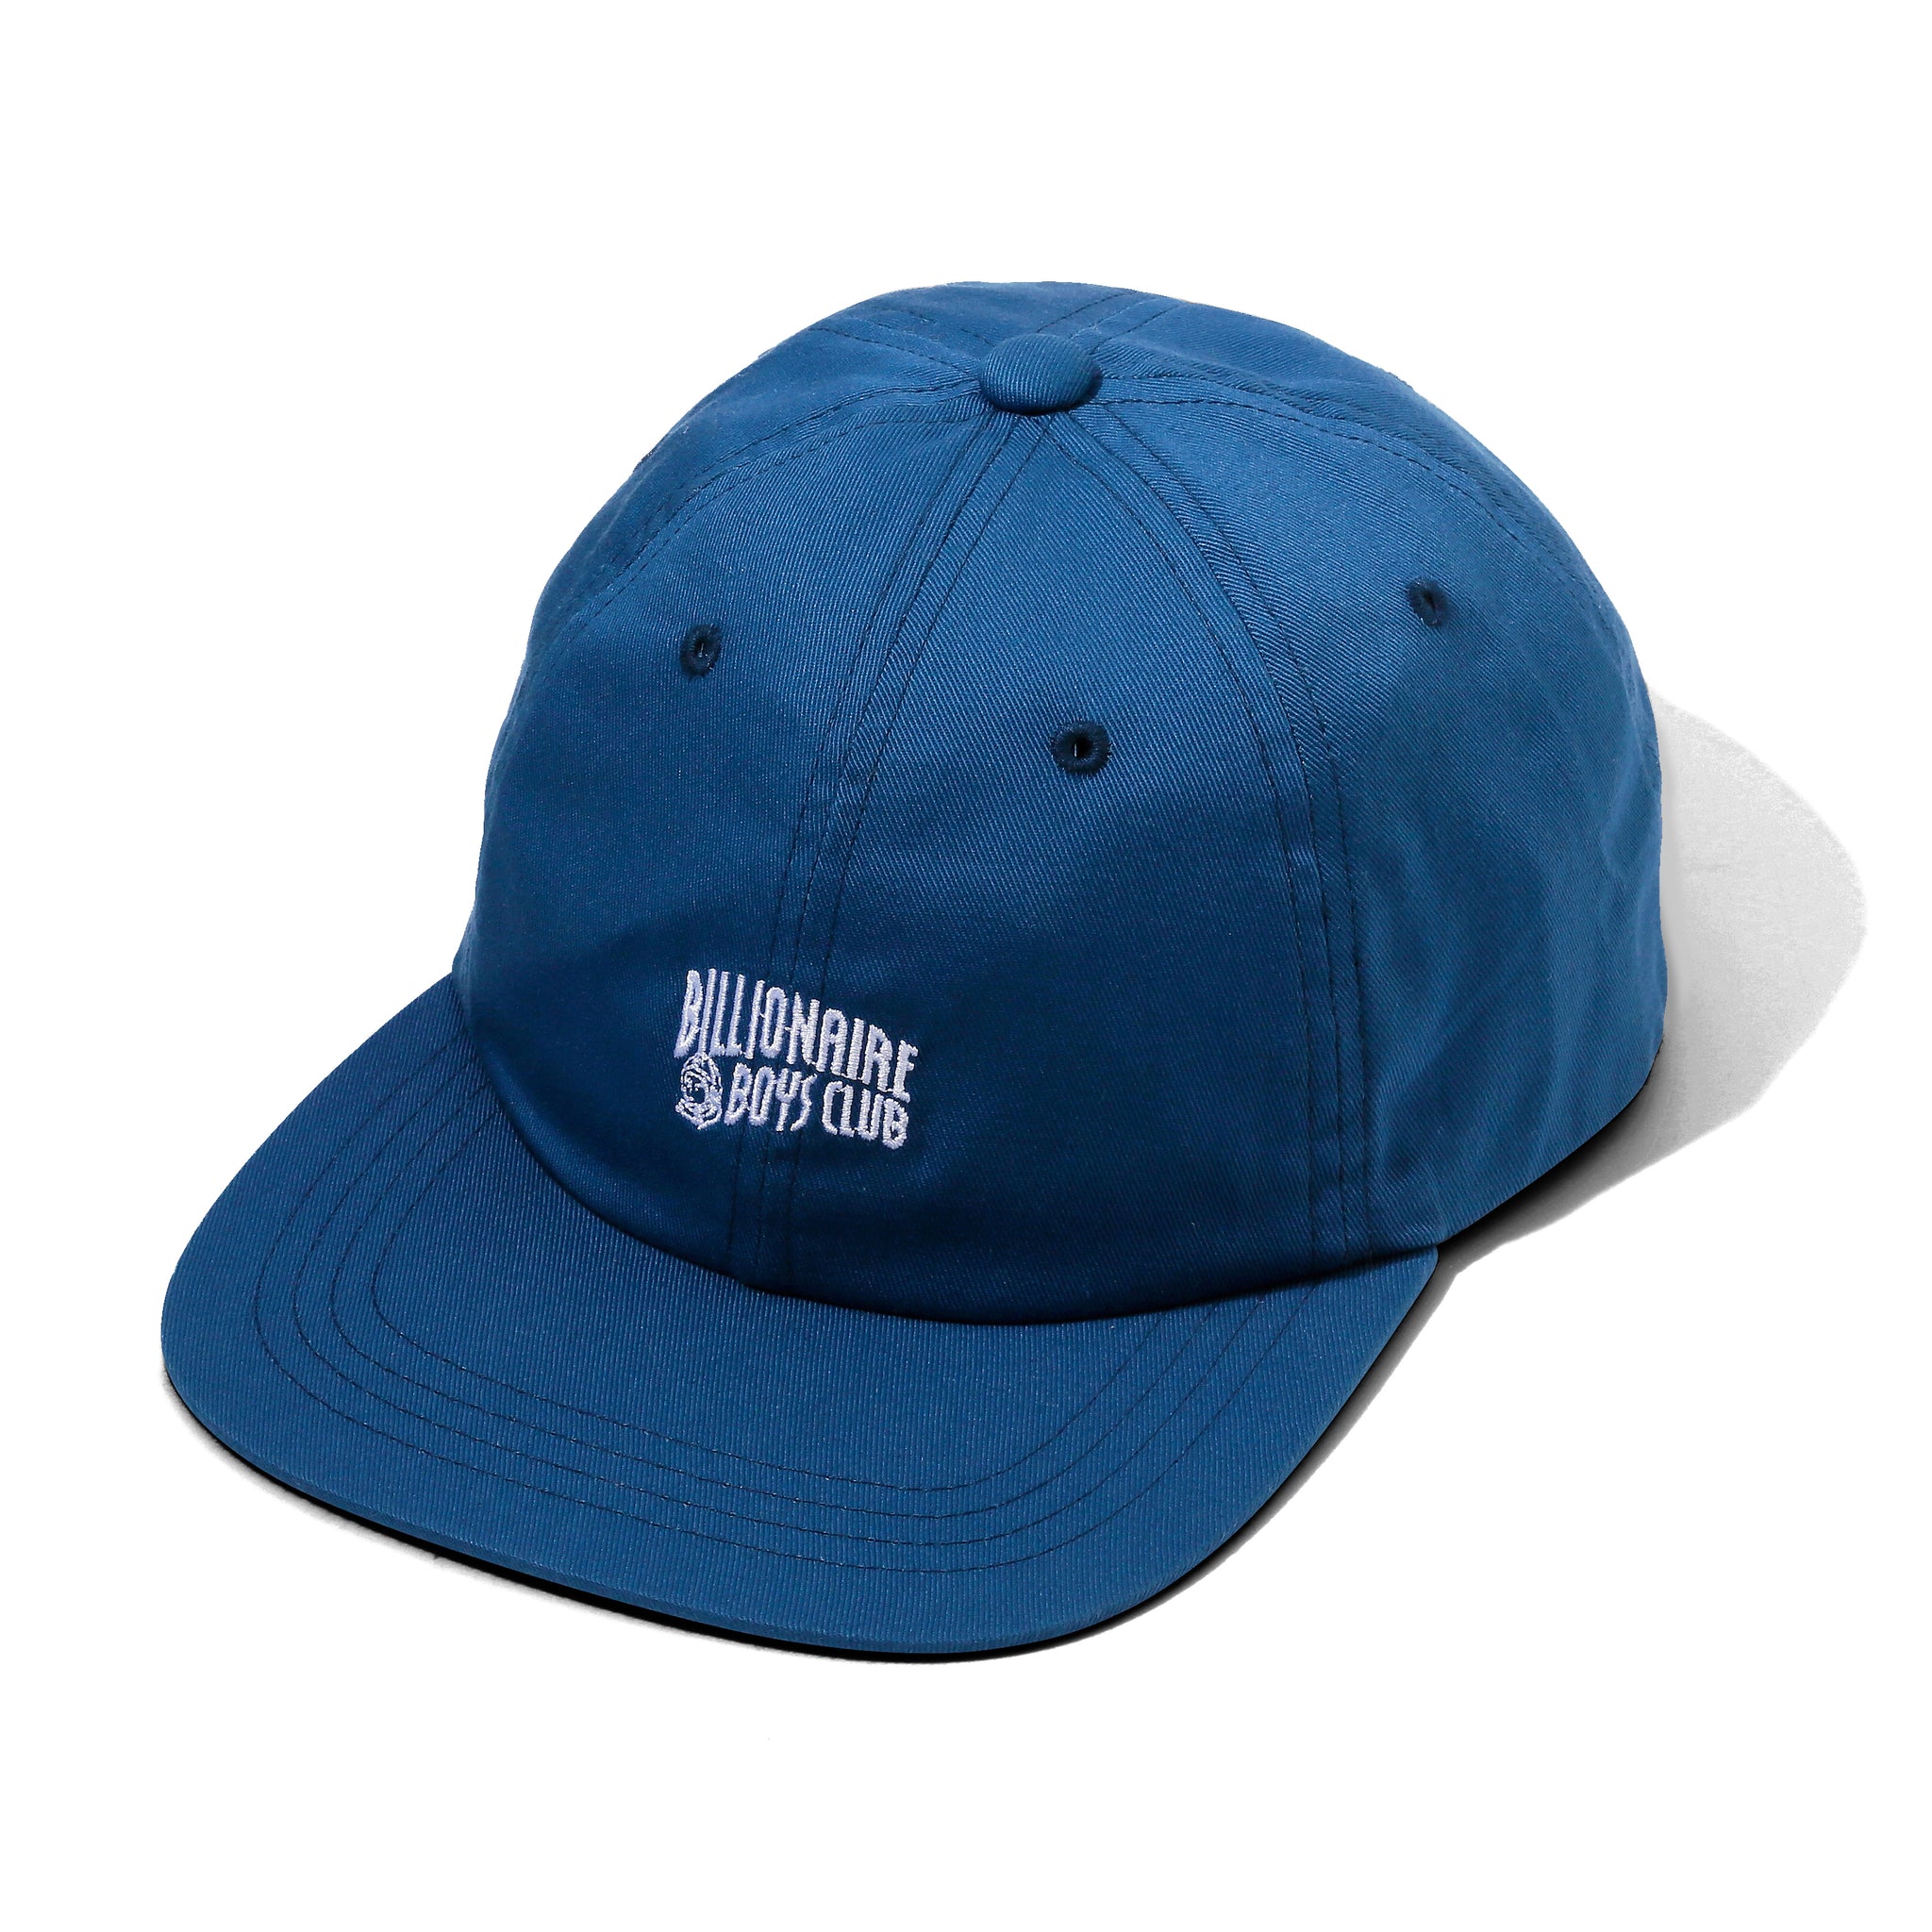 CURVE LOGO 6 PANEL STRAPBACK HAT - BLUE